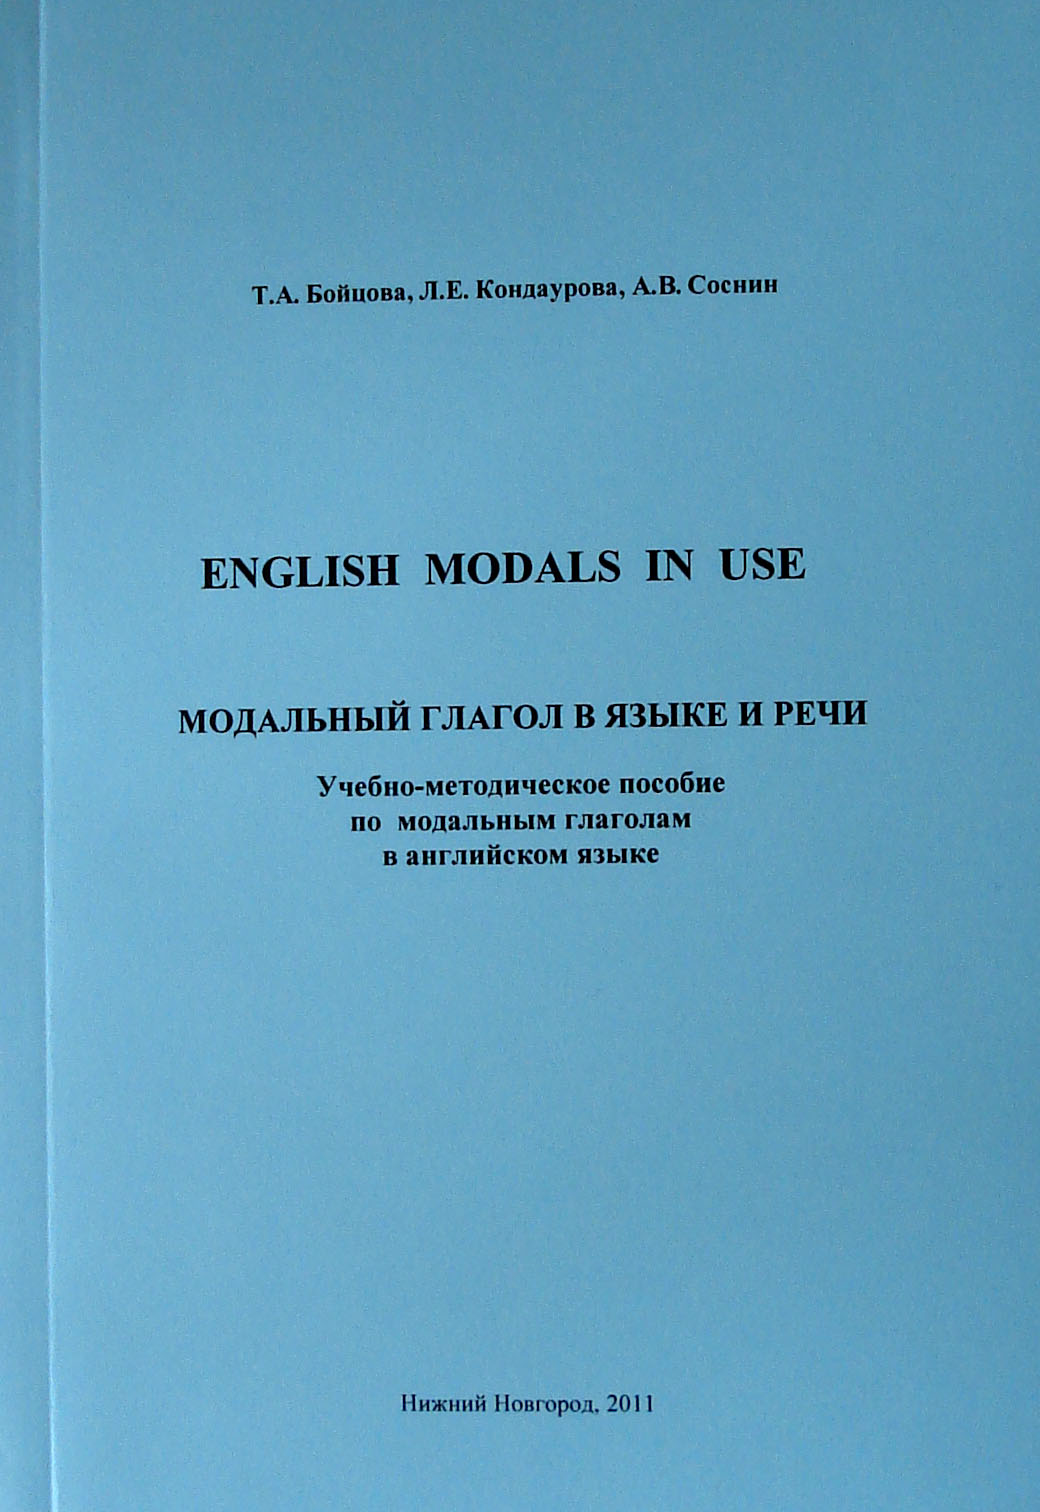 English Modals in Use – Модальный глагол в языке и речи: Учебно-методическое пособие по модальным глаголам в английском языке